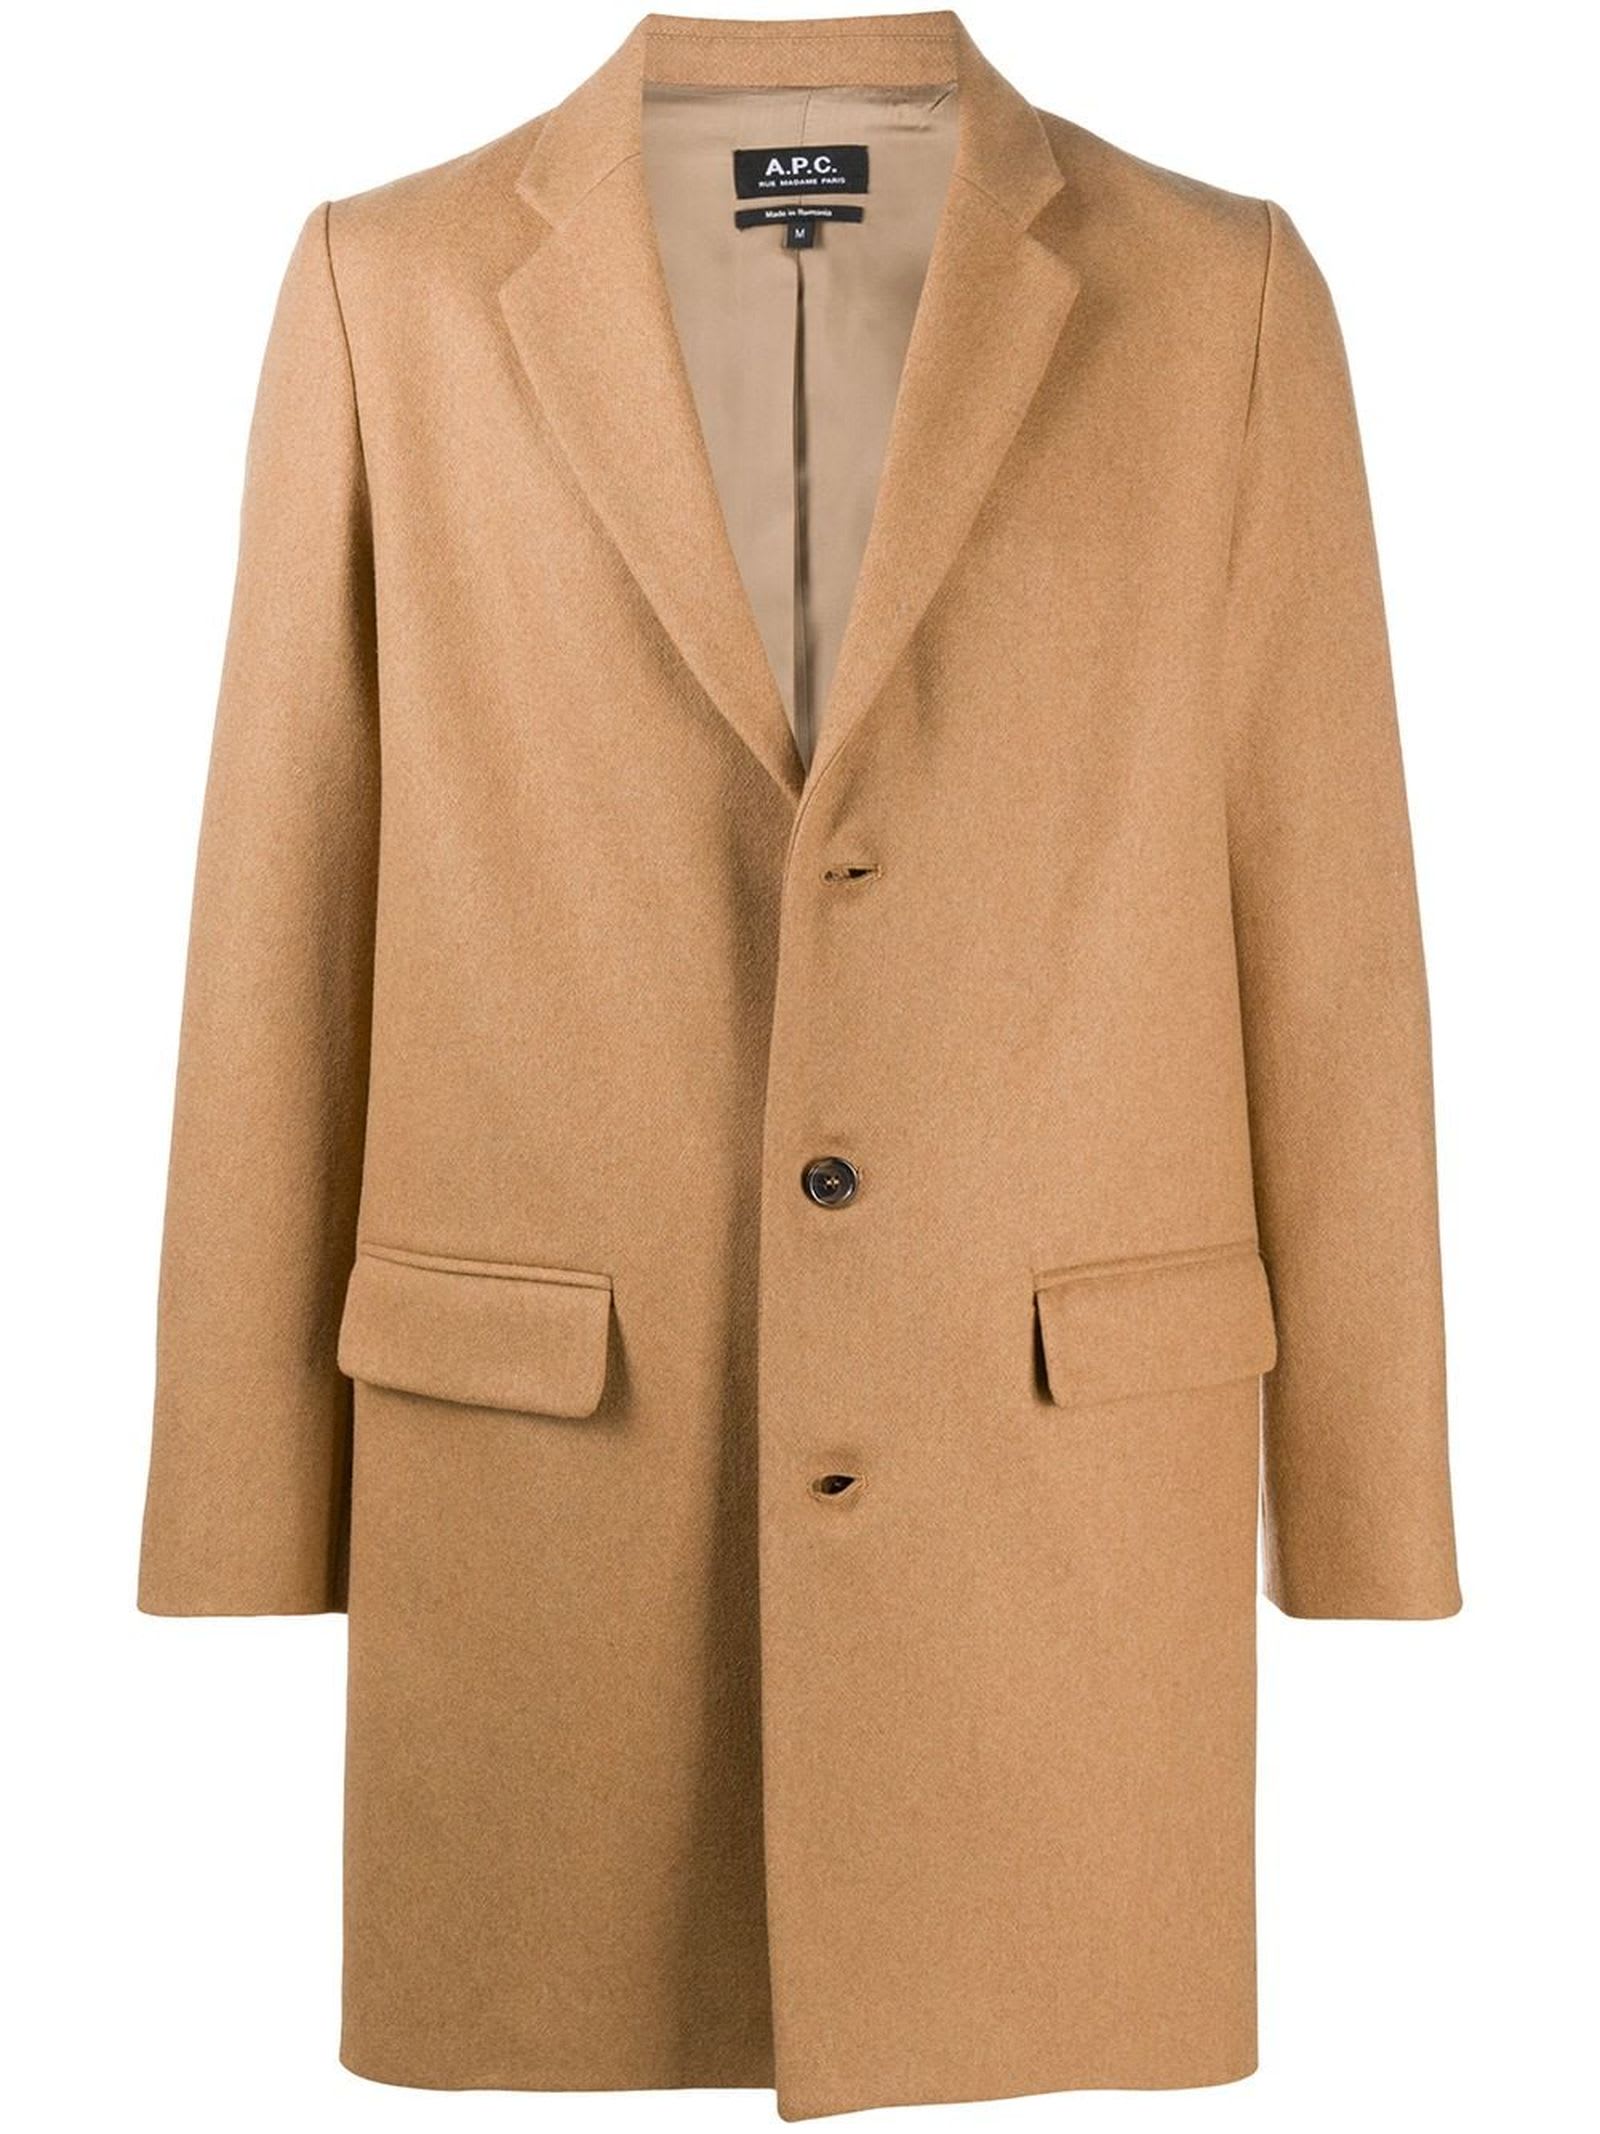 A.P.C. Camel Wool-cashmere Blend Coat